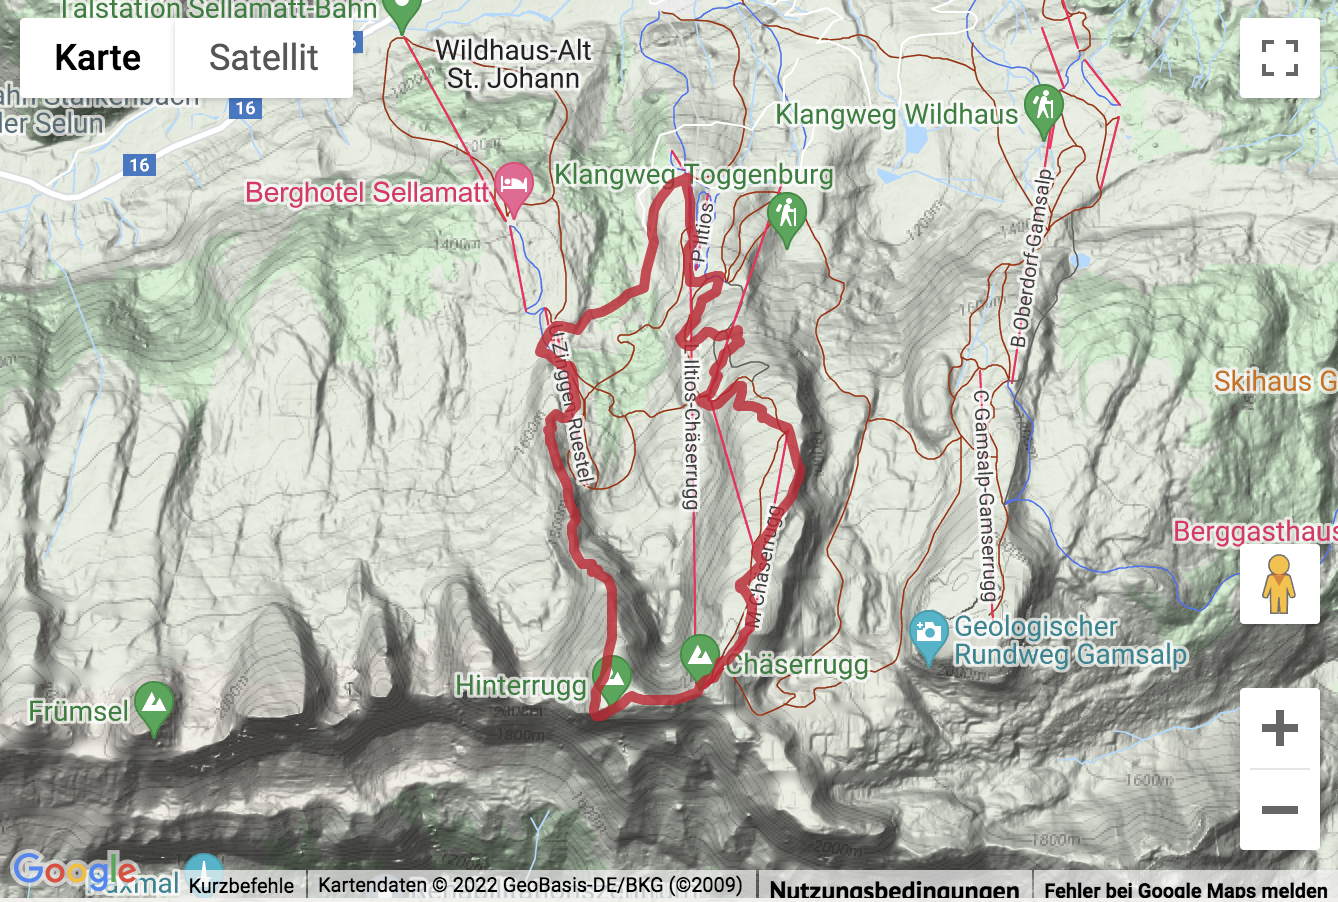 Übersichts-Routenkarte für die Gipfelwanderung zum Chäserrugg und zum Hinterrugg